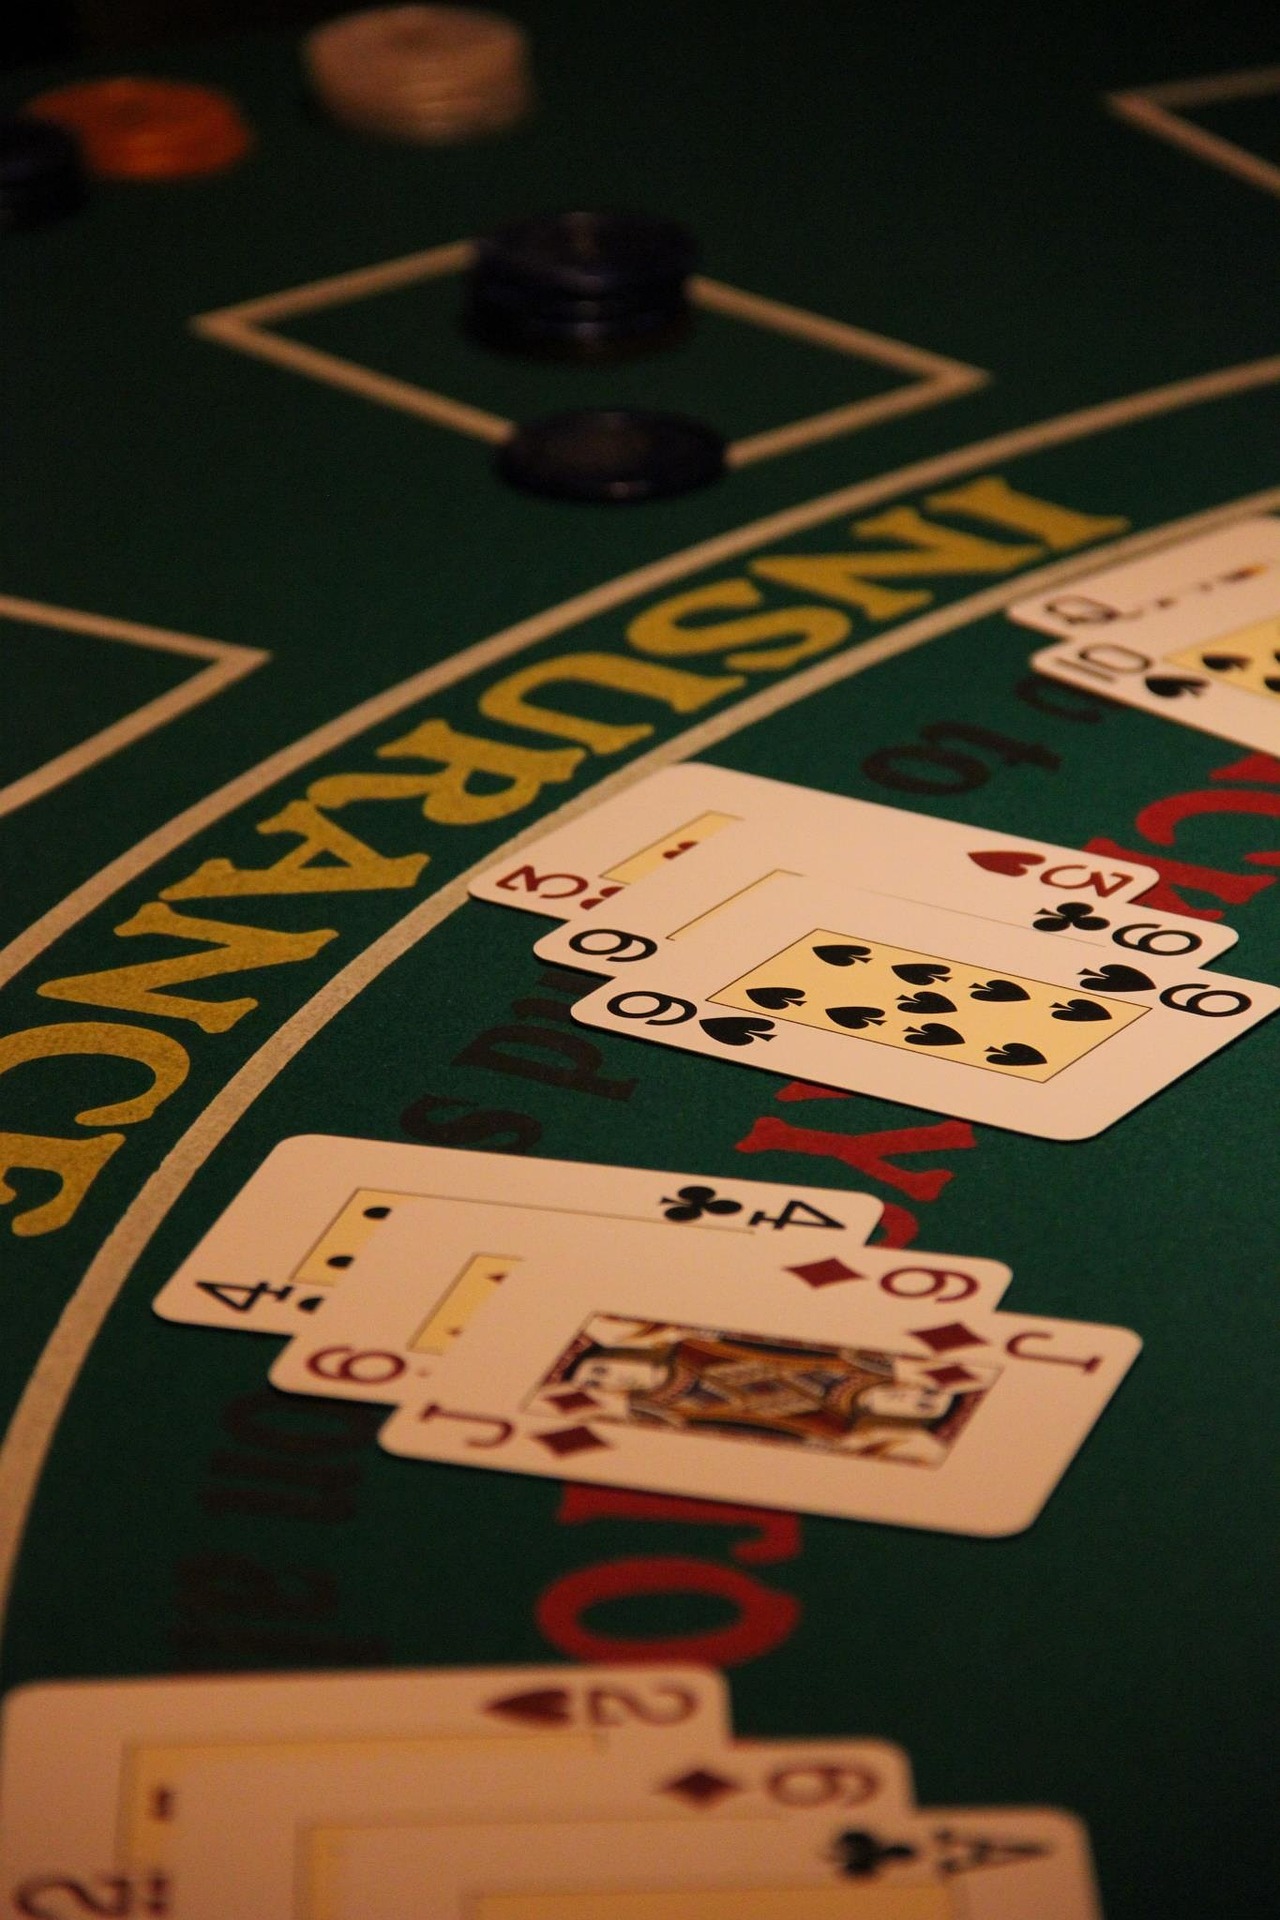 Mengenal Pot Odds dan Implied Odds dalam Poker Online